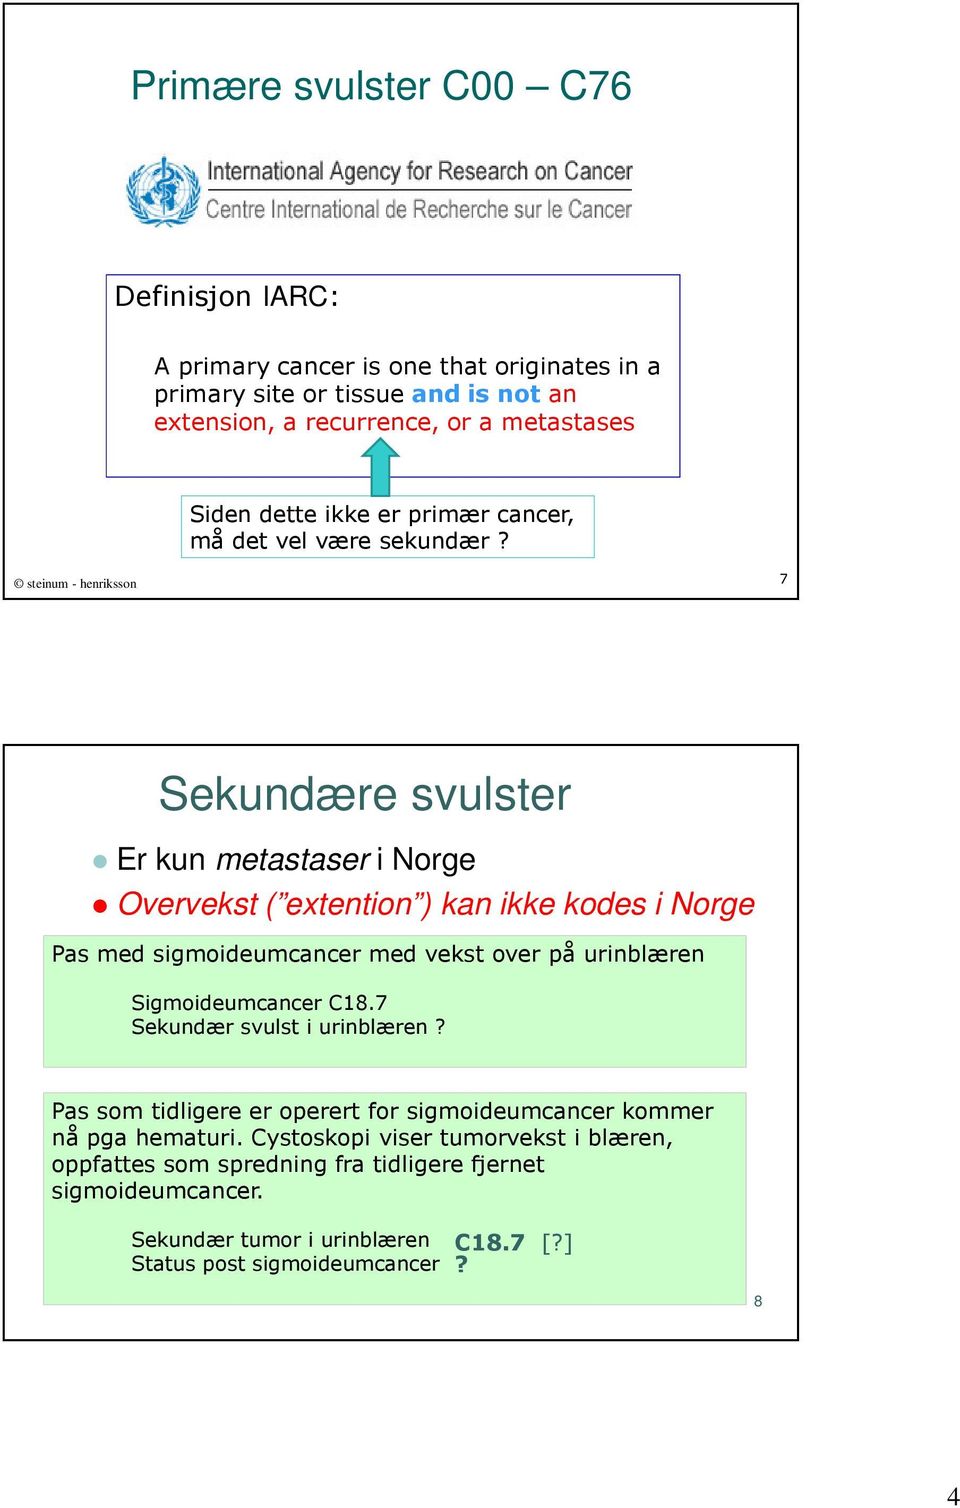 steinum - henriksson 7 Sekundære svulster Er kun metastaser i Norge Overvekst ( extention ) kan ikke kodes i Norge Pas med sigmoideumcancer med vekst over på urinblæren